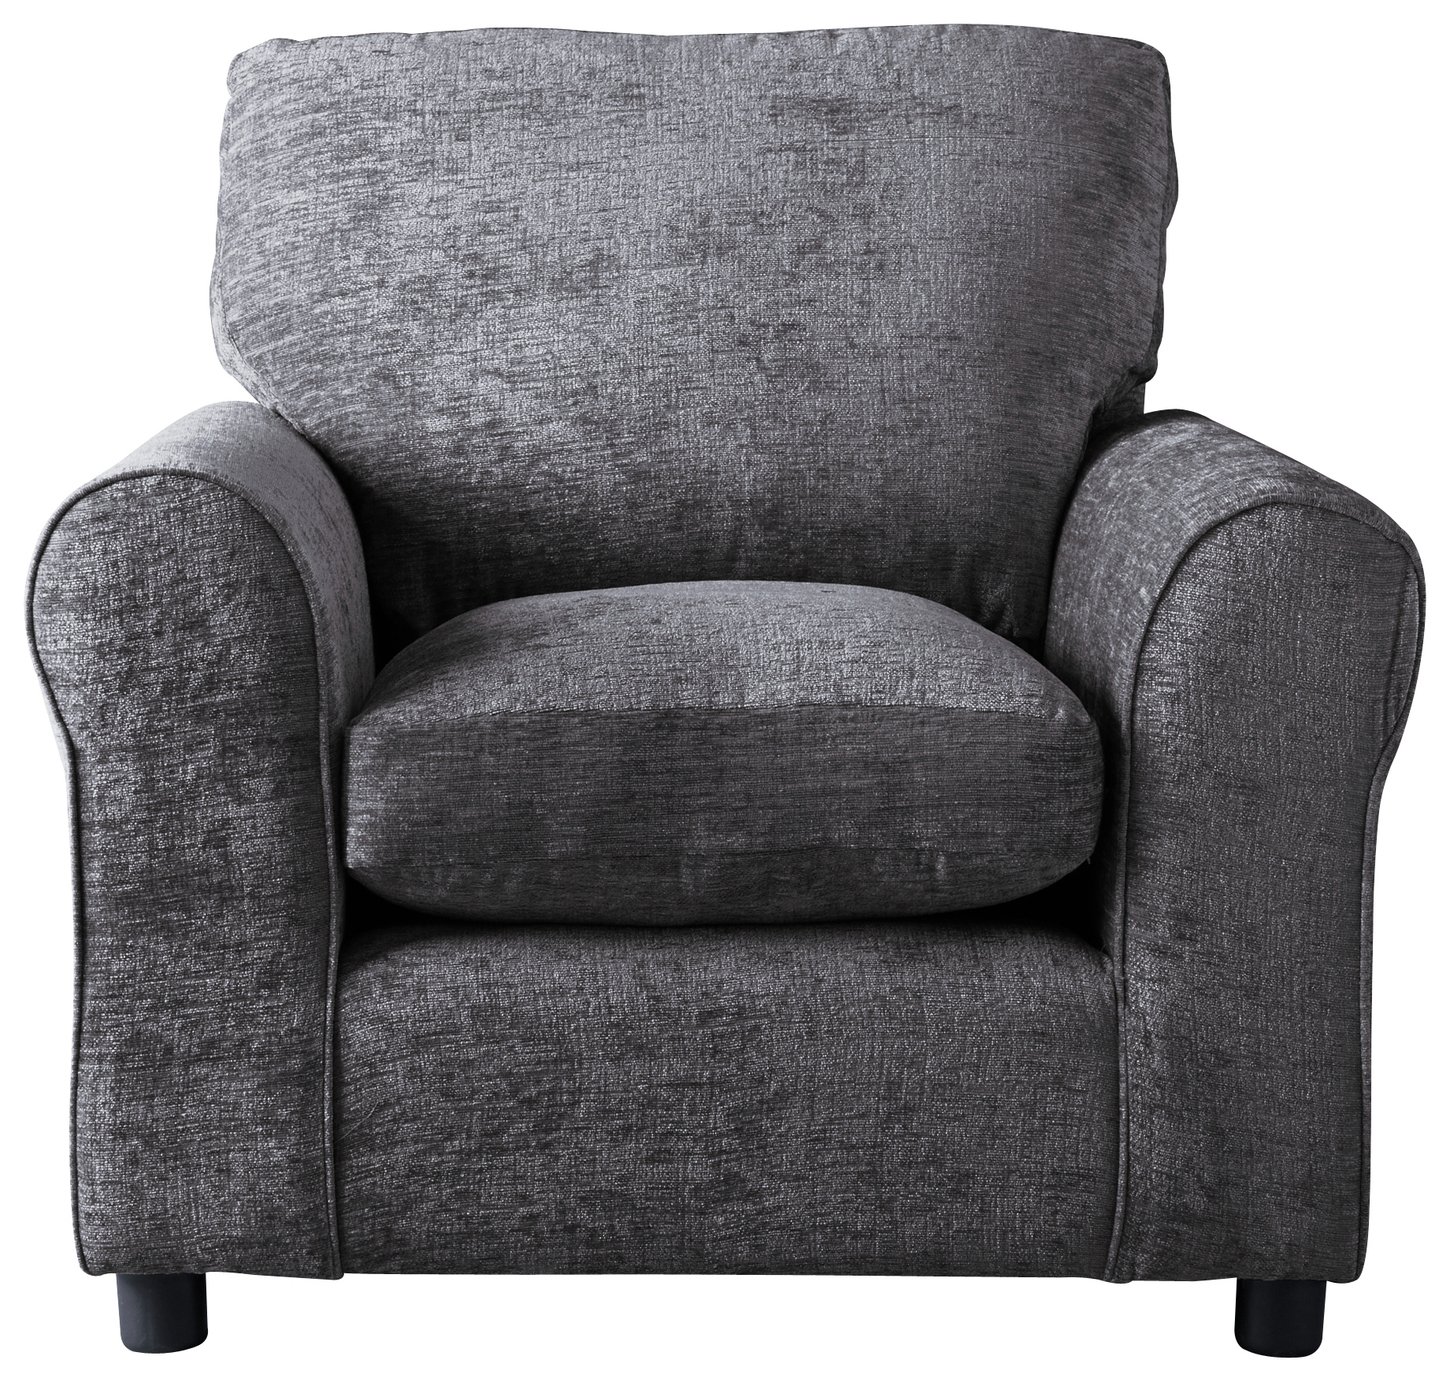 Argos Home Tessa Fabric Chair - Charcoal